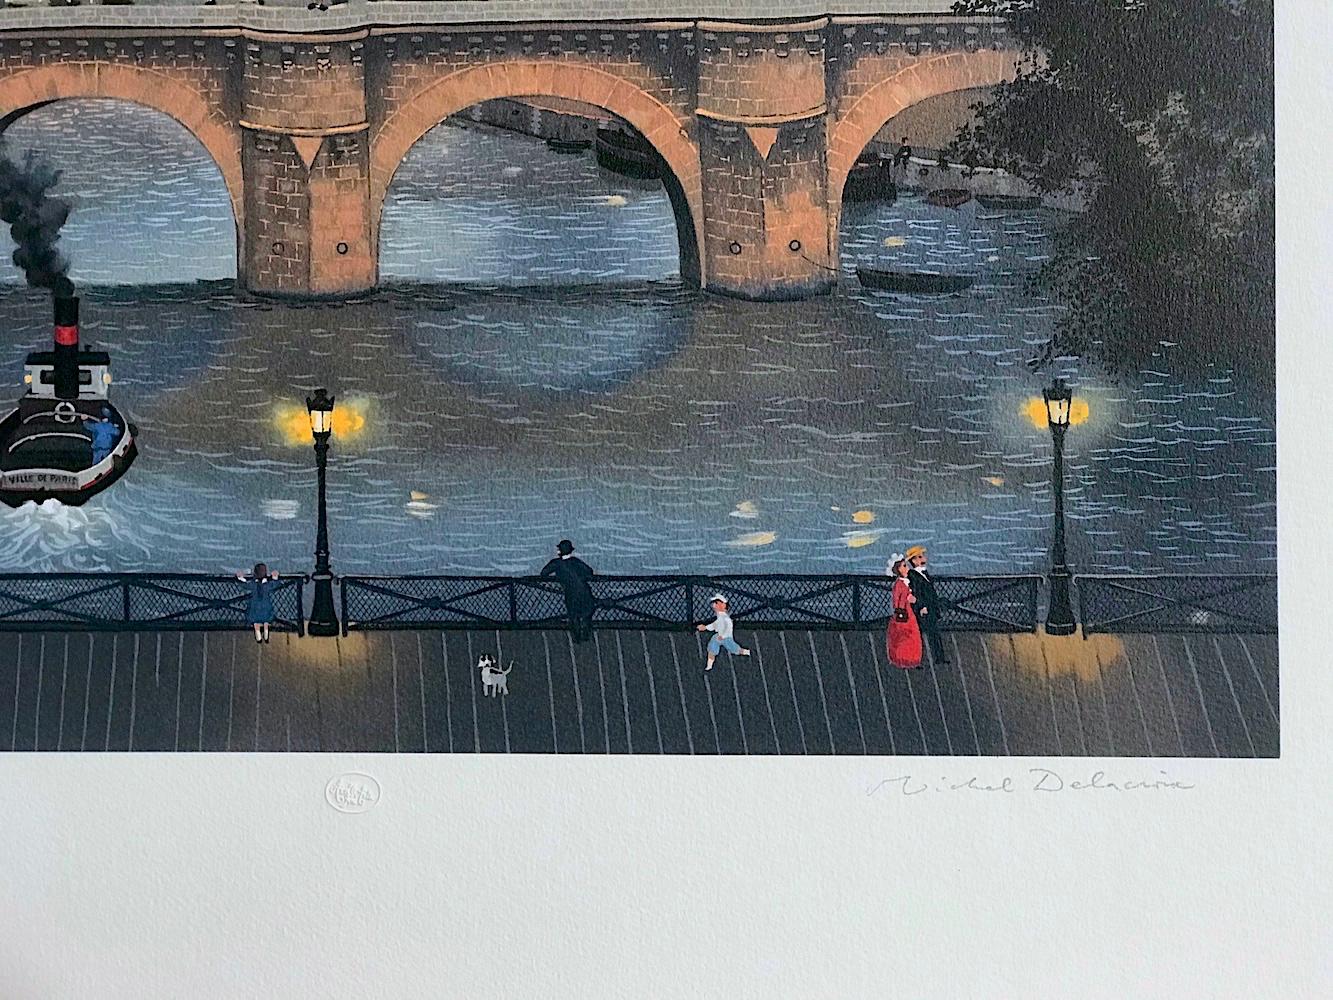 PONT NEUF LE SOIR, Signed Original Lithograph, Paris Night Scene Historic Bridge - Contemporary Print by Michel Delacroix